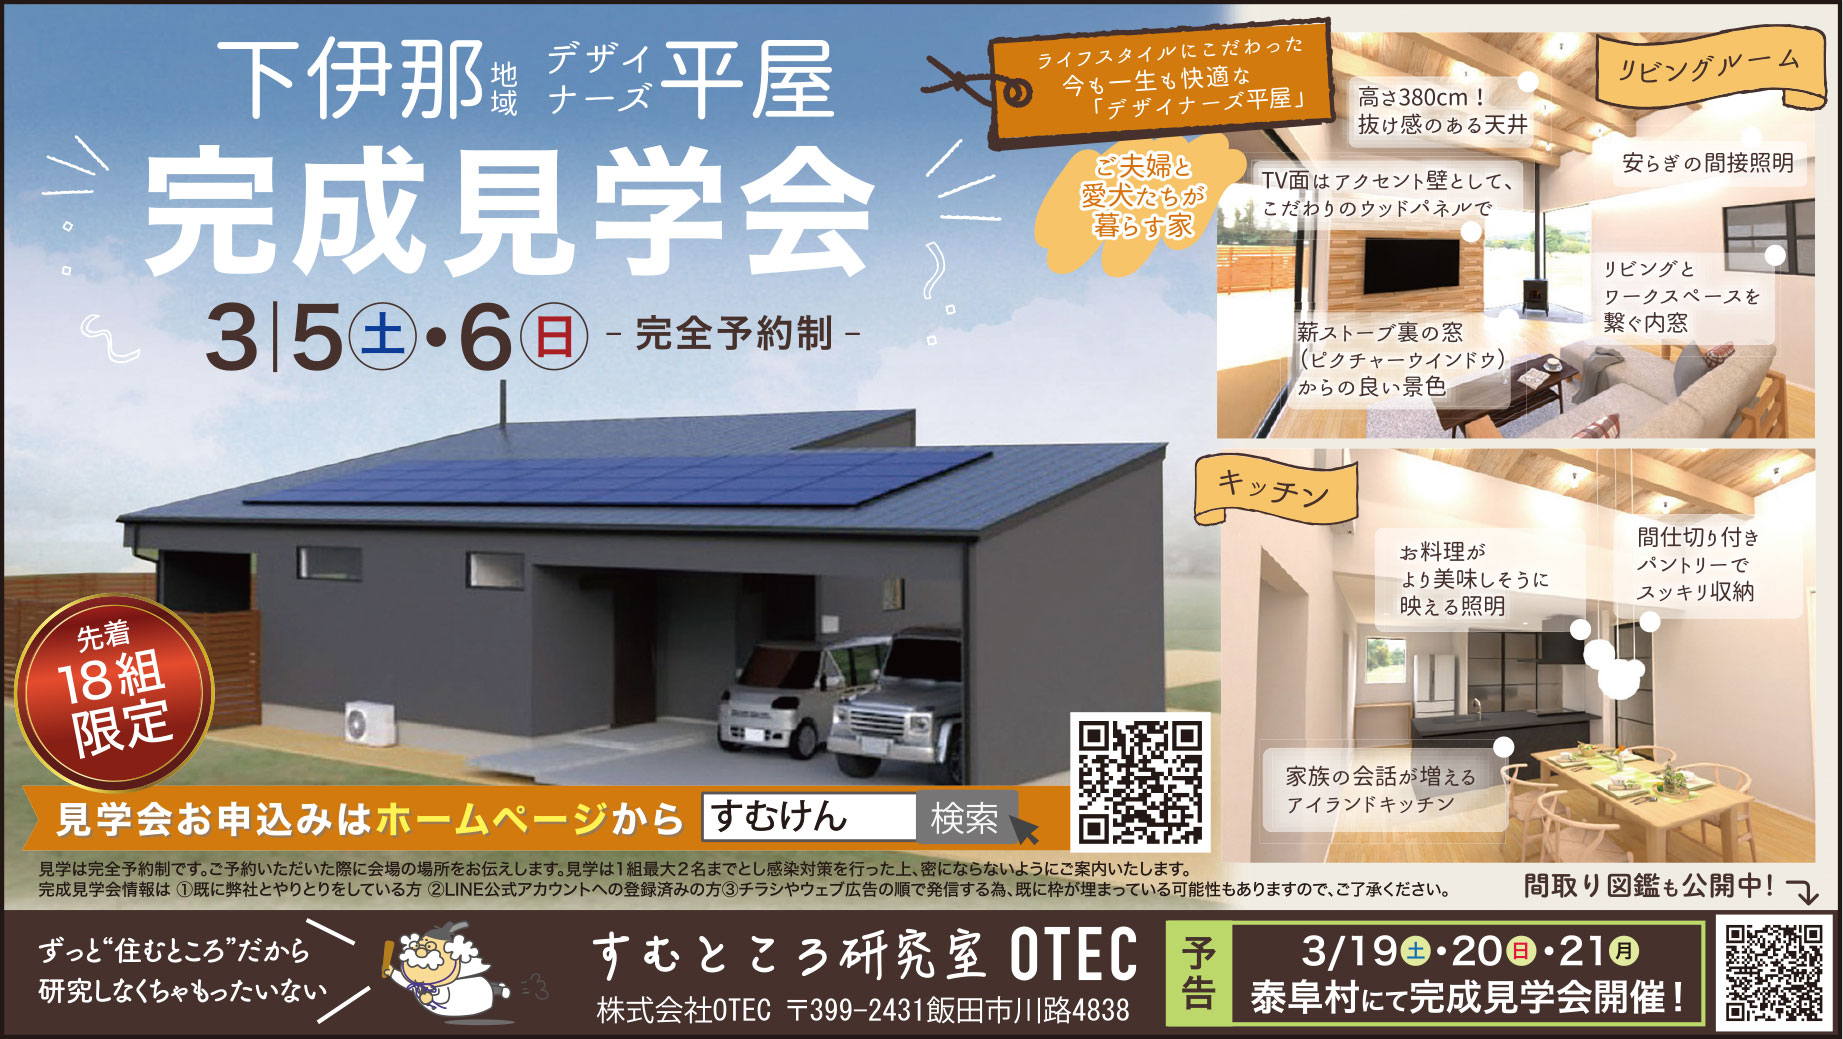 飯田市 OTEC様 住宅見学会広告 2022年3月